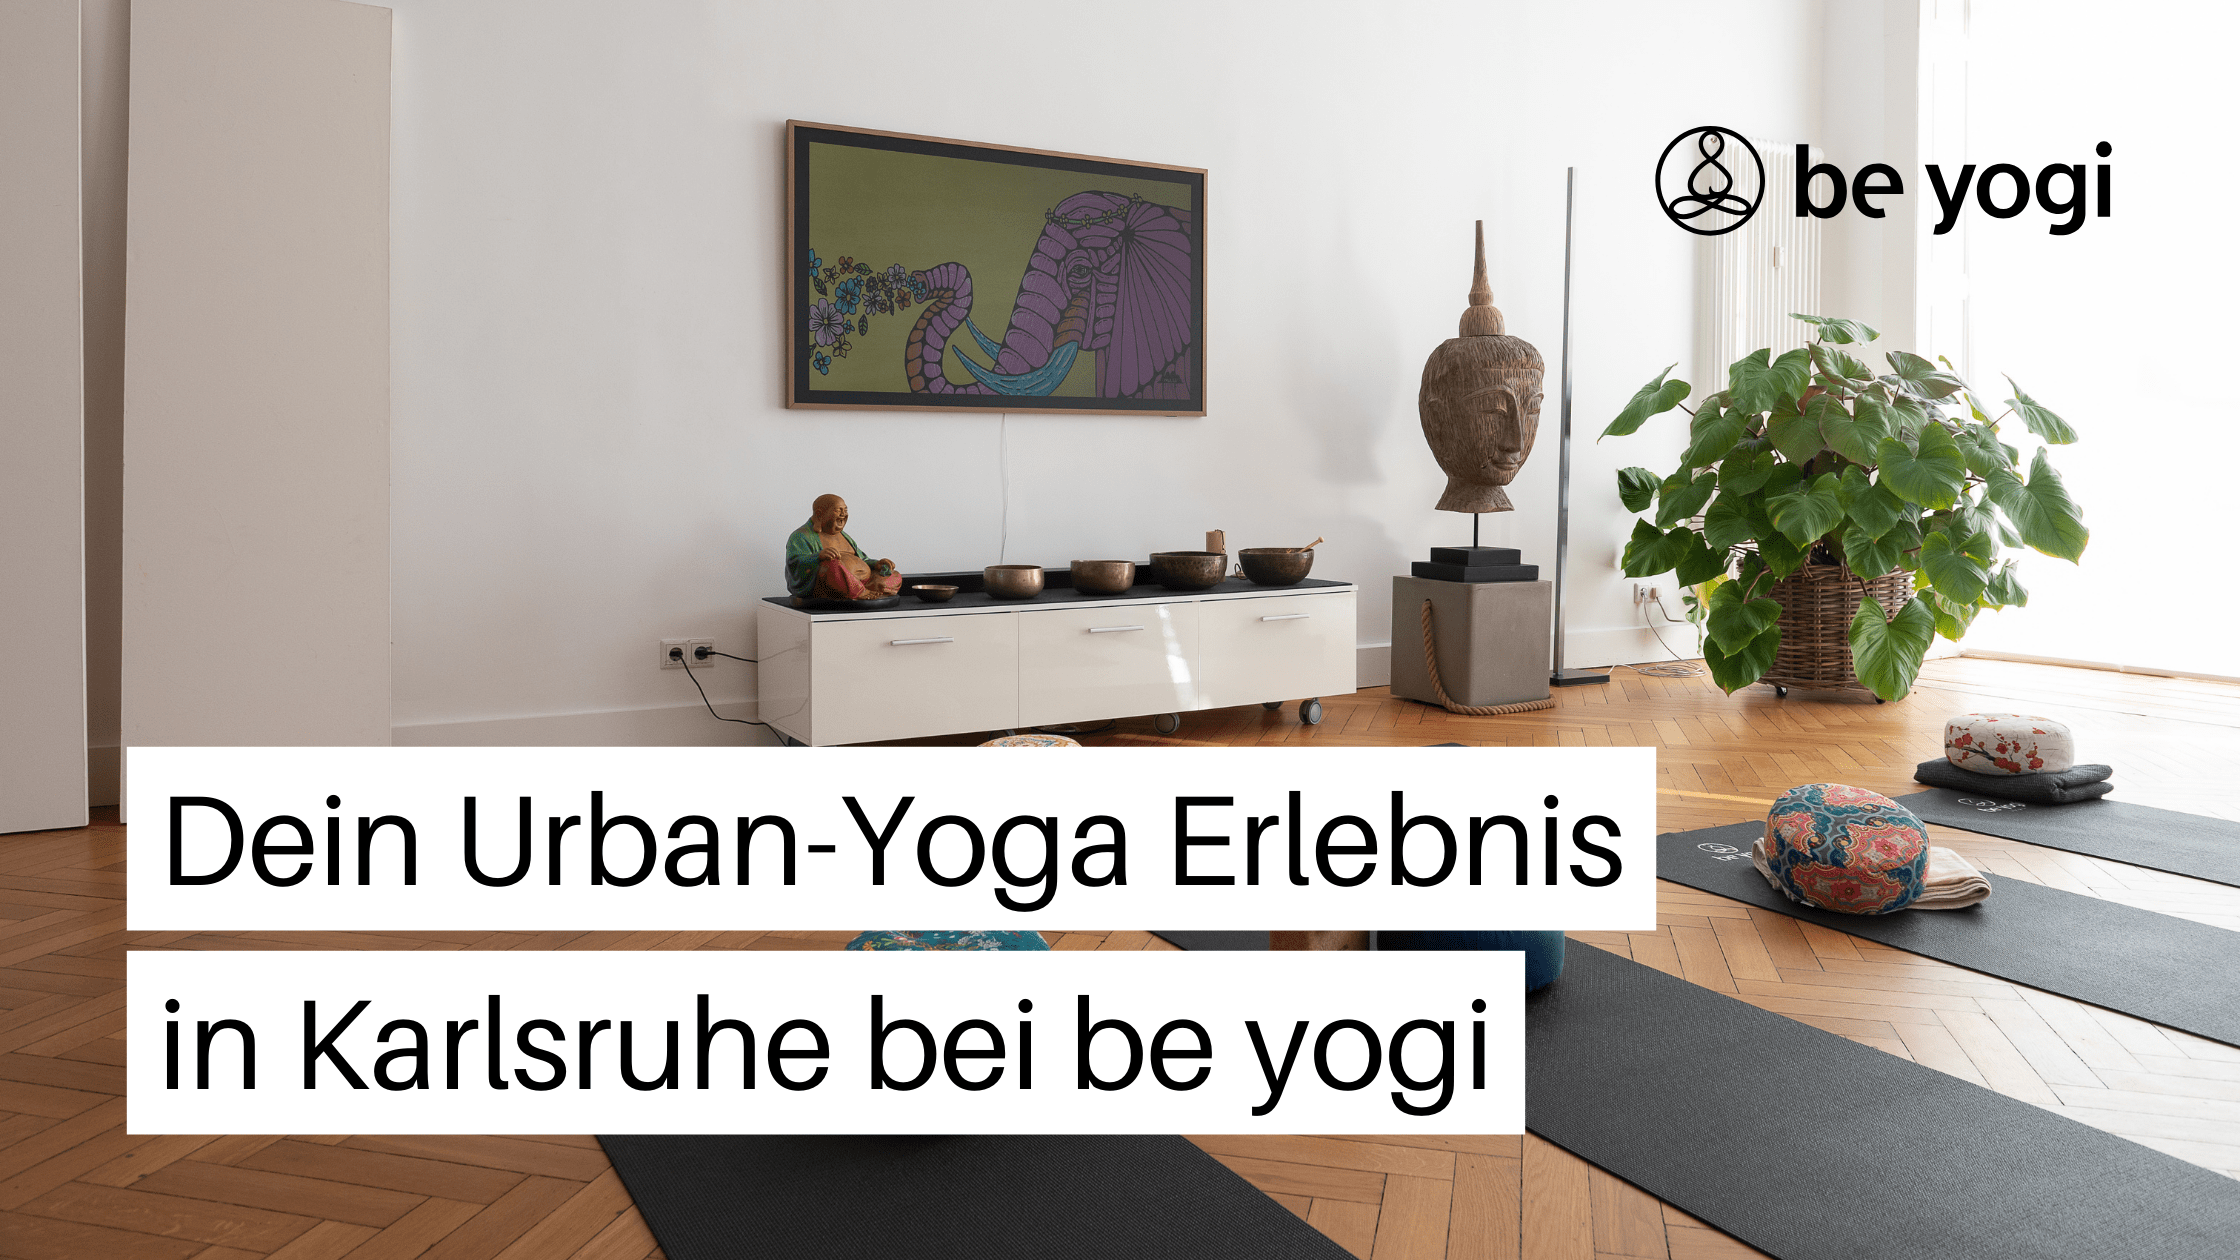 Dein-Urban-Yoga-Erlebnis-in-Karlsruhe-bei-be-yogi-Be-Yogi-Artikel-Ayurveda-Yoga